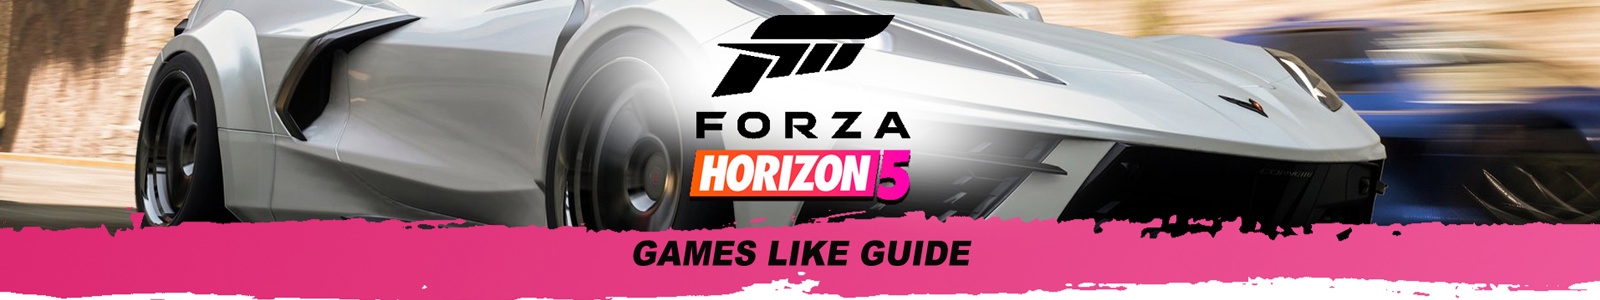 Guia de jogos similares a Forza Horizon 5